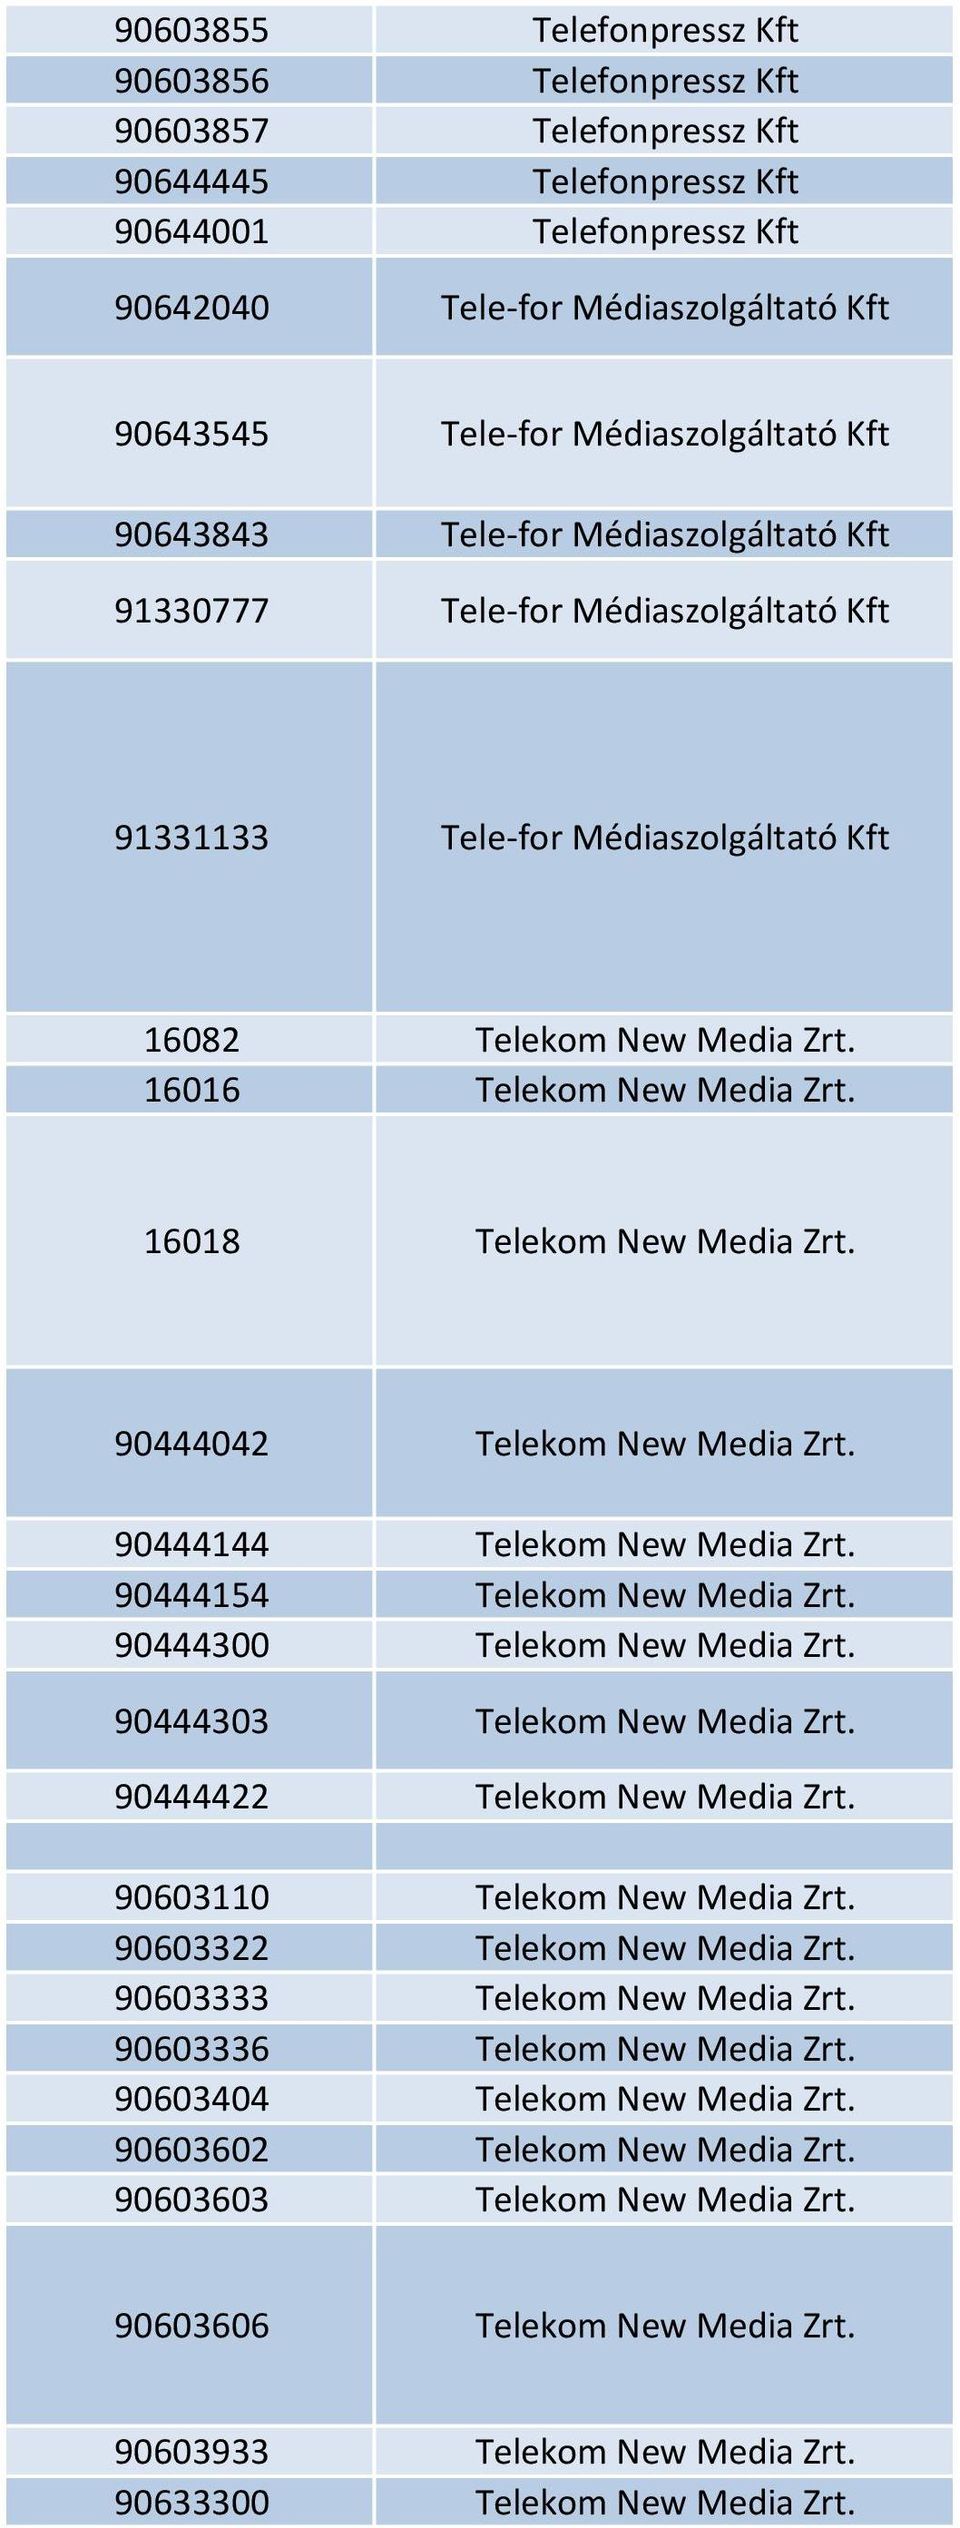 16018 Telekom New Media Zrt. 90444042 Telekom New Media Zrt. 90444144 Telekom New Media Zrt. 90444154 Telekom New Media Zrt. 90444300 Telekom New Media Zrt. 90444303 Telekom New Media Zrt.